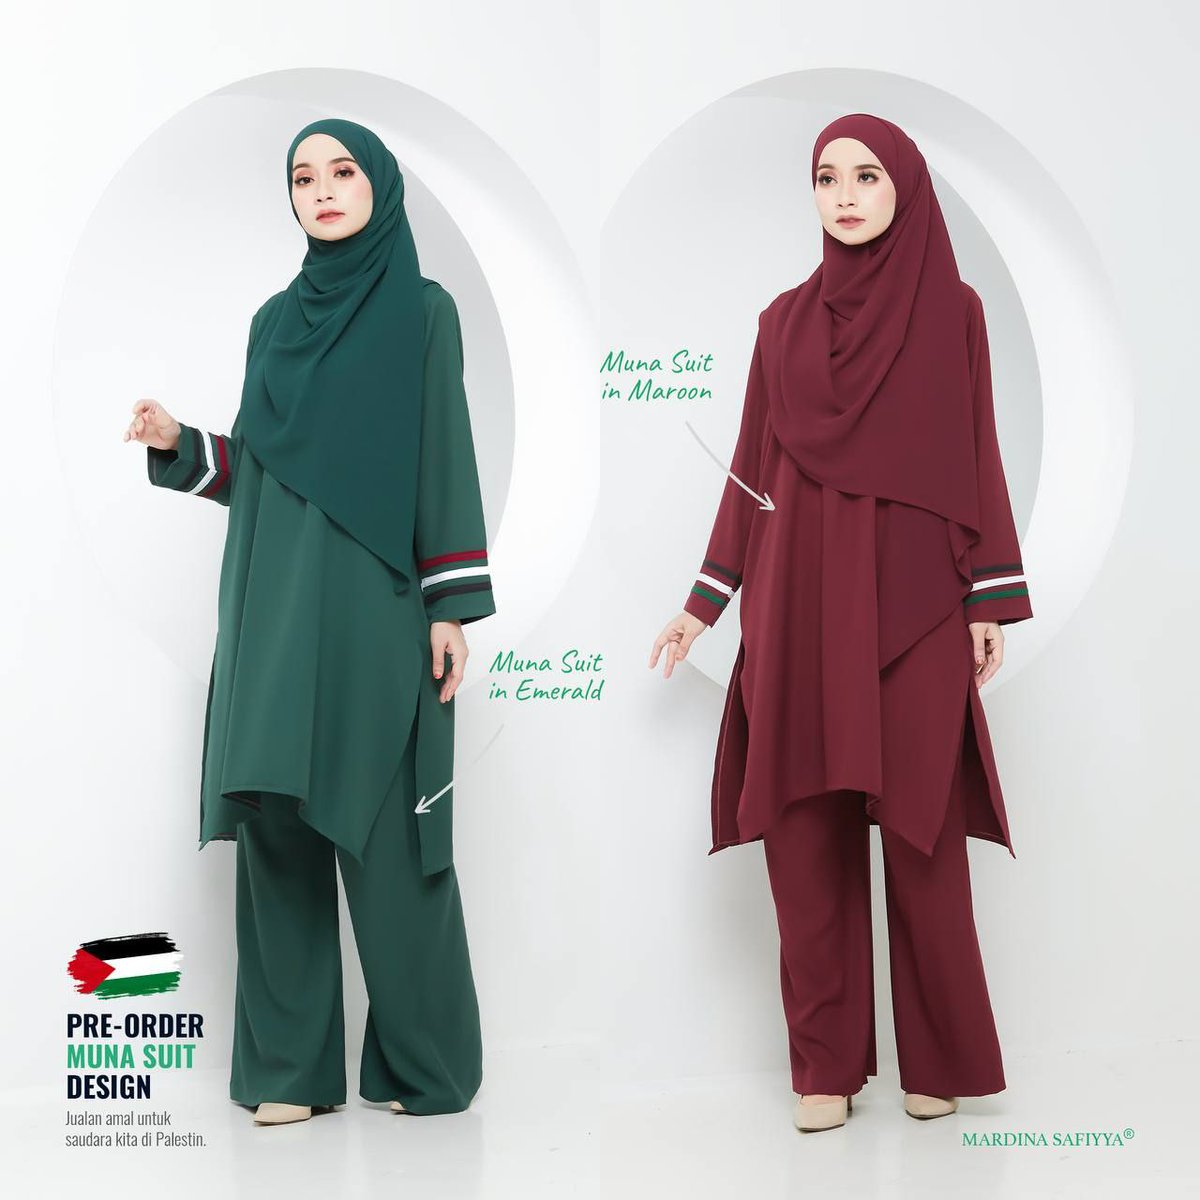 Muna Suit...hanya RM99 je sepasang, percuma sehelai shawl & niqab. 

Item pre-oder, dijangka postout 30/6/2021 secara berperingkat

Wasap segera seblm oder ditutup pada 15/6/2021

Wasap 0169267912

#selleronline #suitlovers #suitmuslimah #raya2021 #Palestine